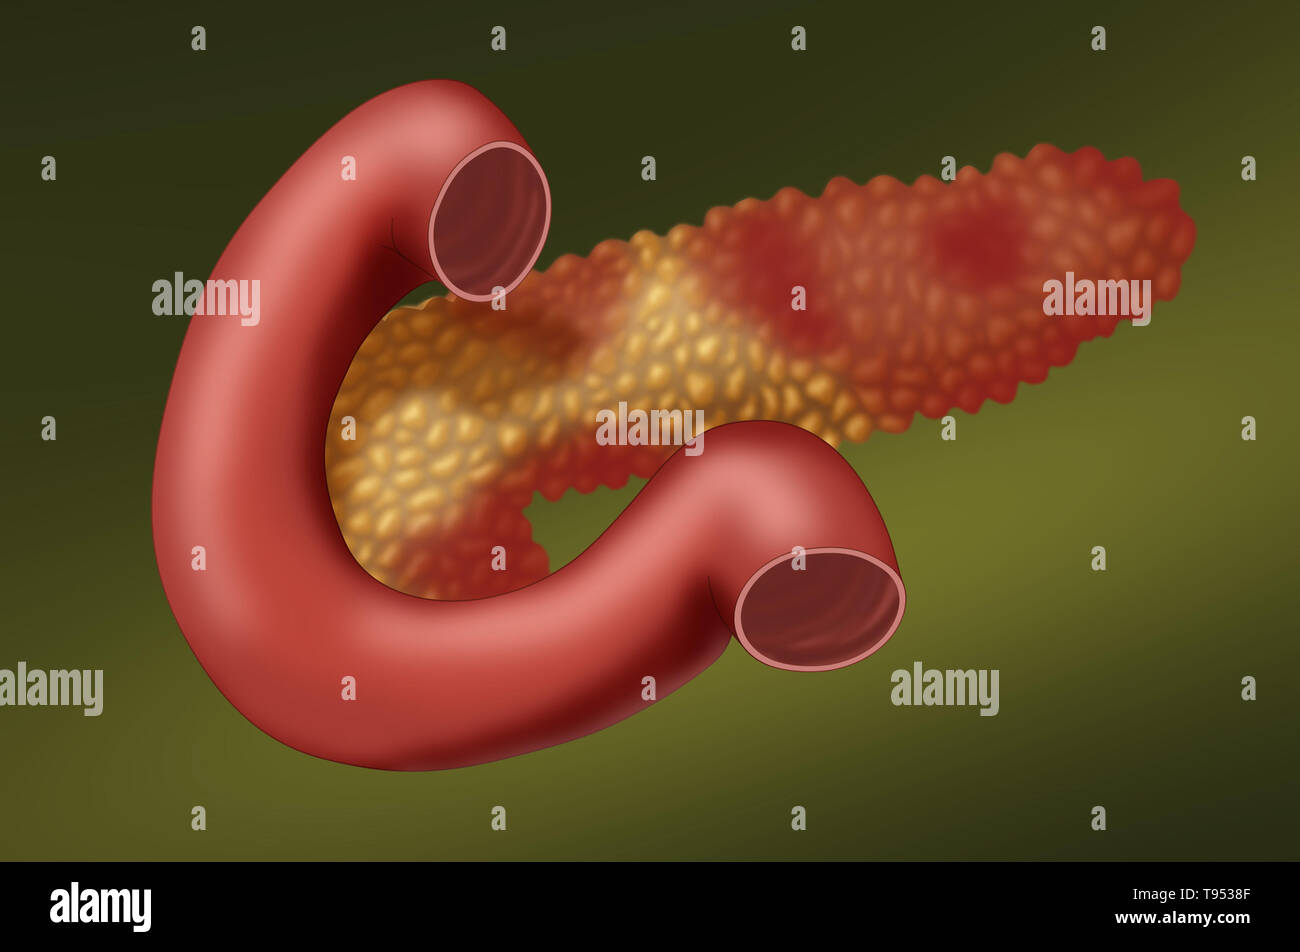 Una illustrazione che mostra un pancreas con pancreatite acuta. La pancreatite è una infiammazione del pancreas. Foto Stock